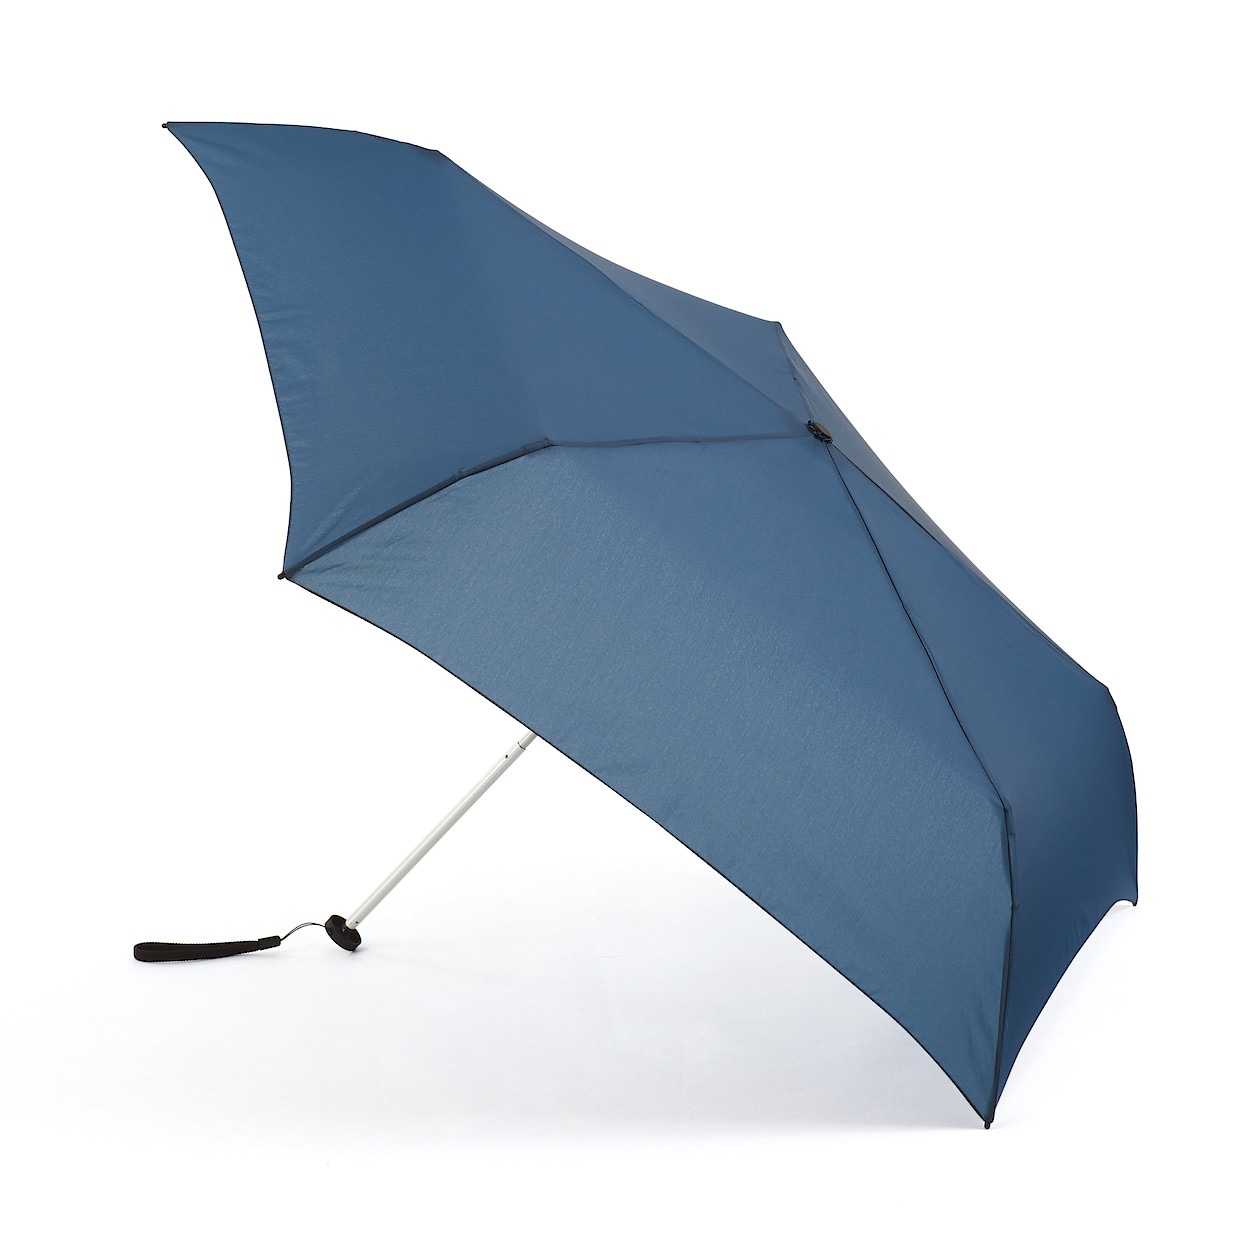 BLUE(경량 · 양산 겸용 접이식 우산)